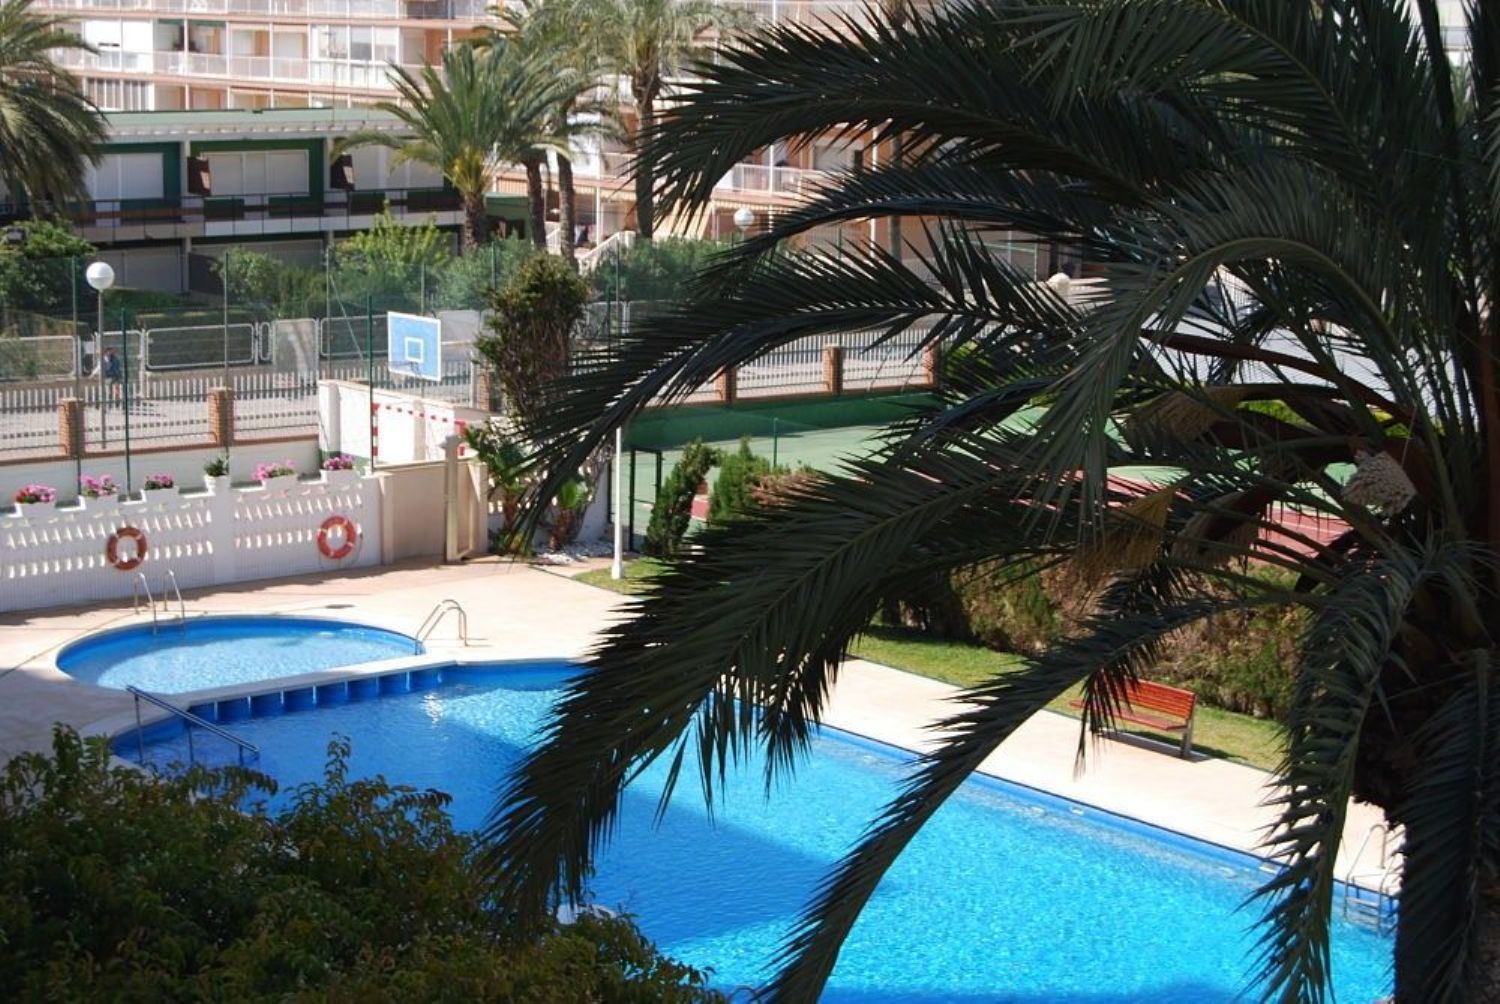 Apartment for sale on the seafront in Avenida de Niza, in Alicante